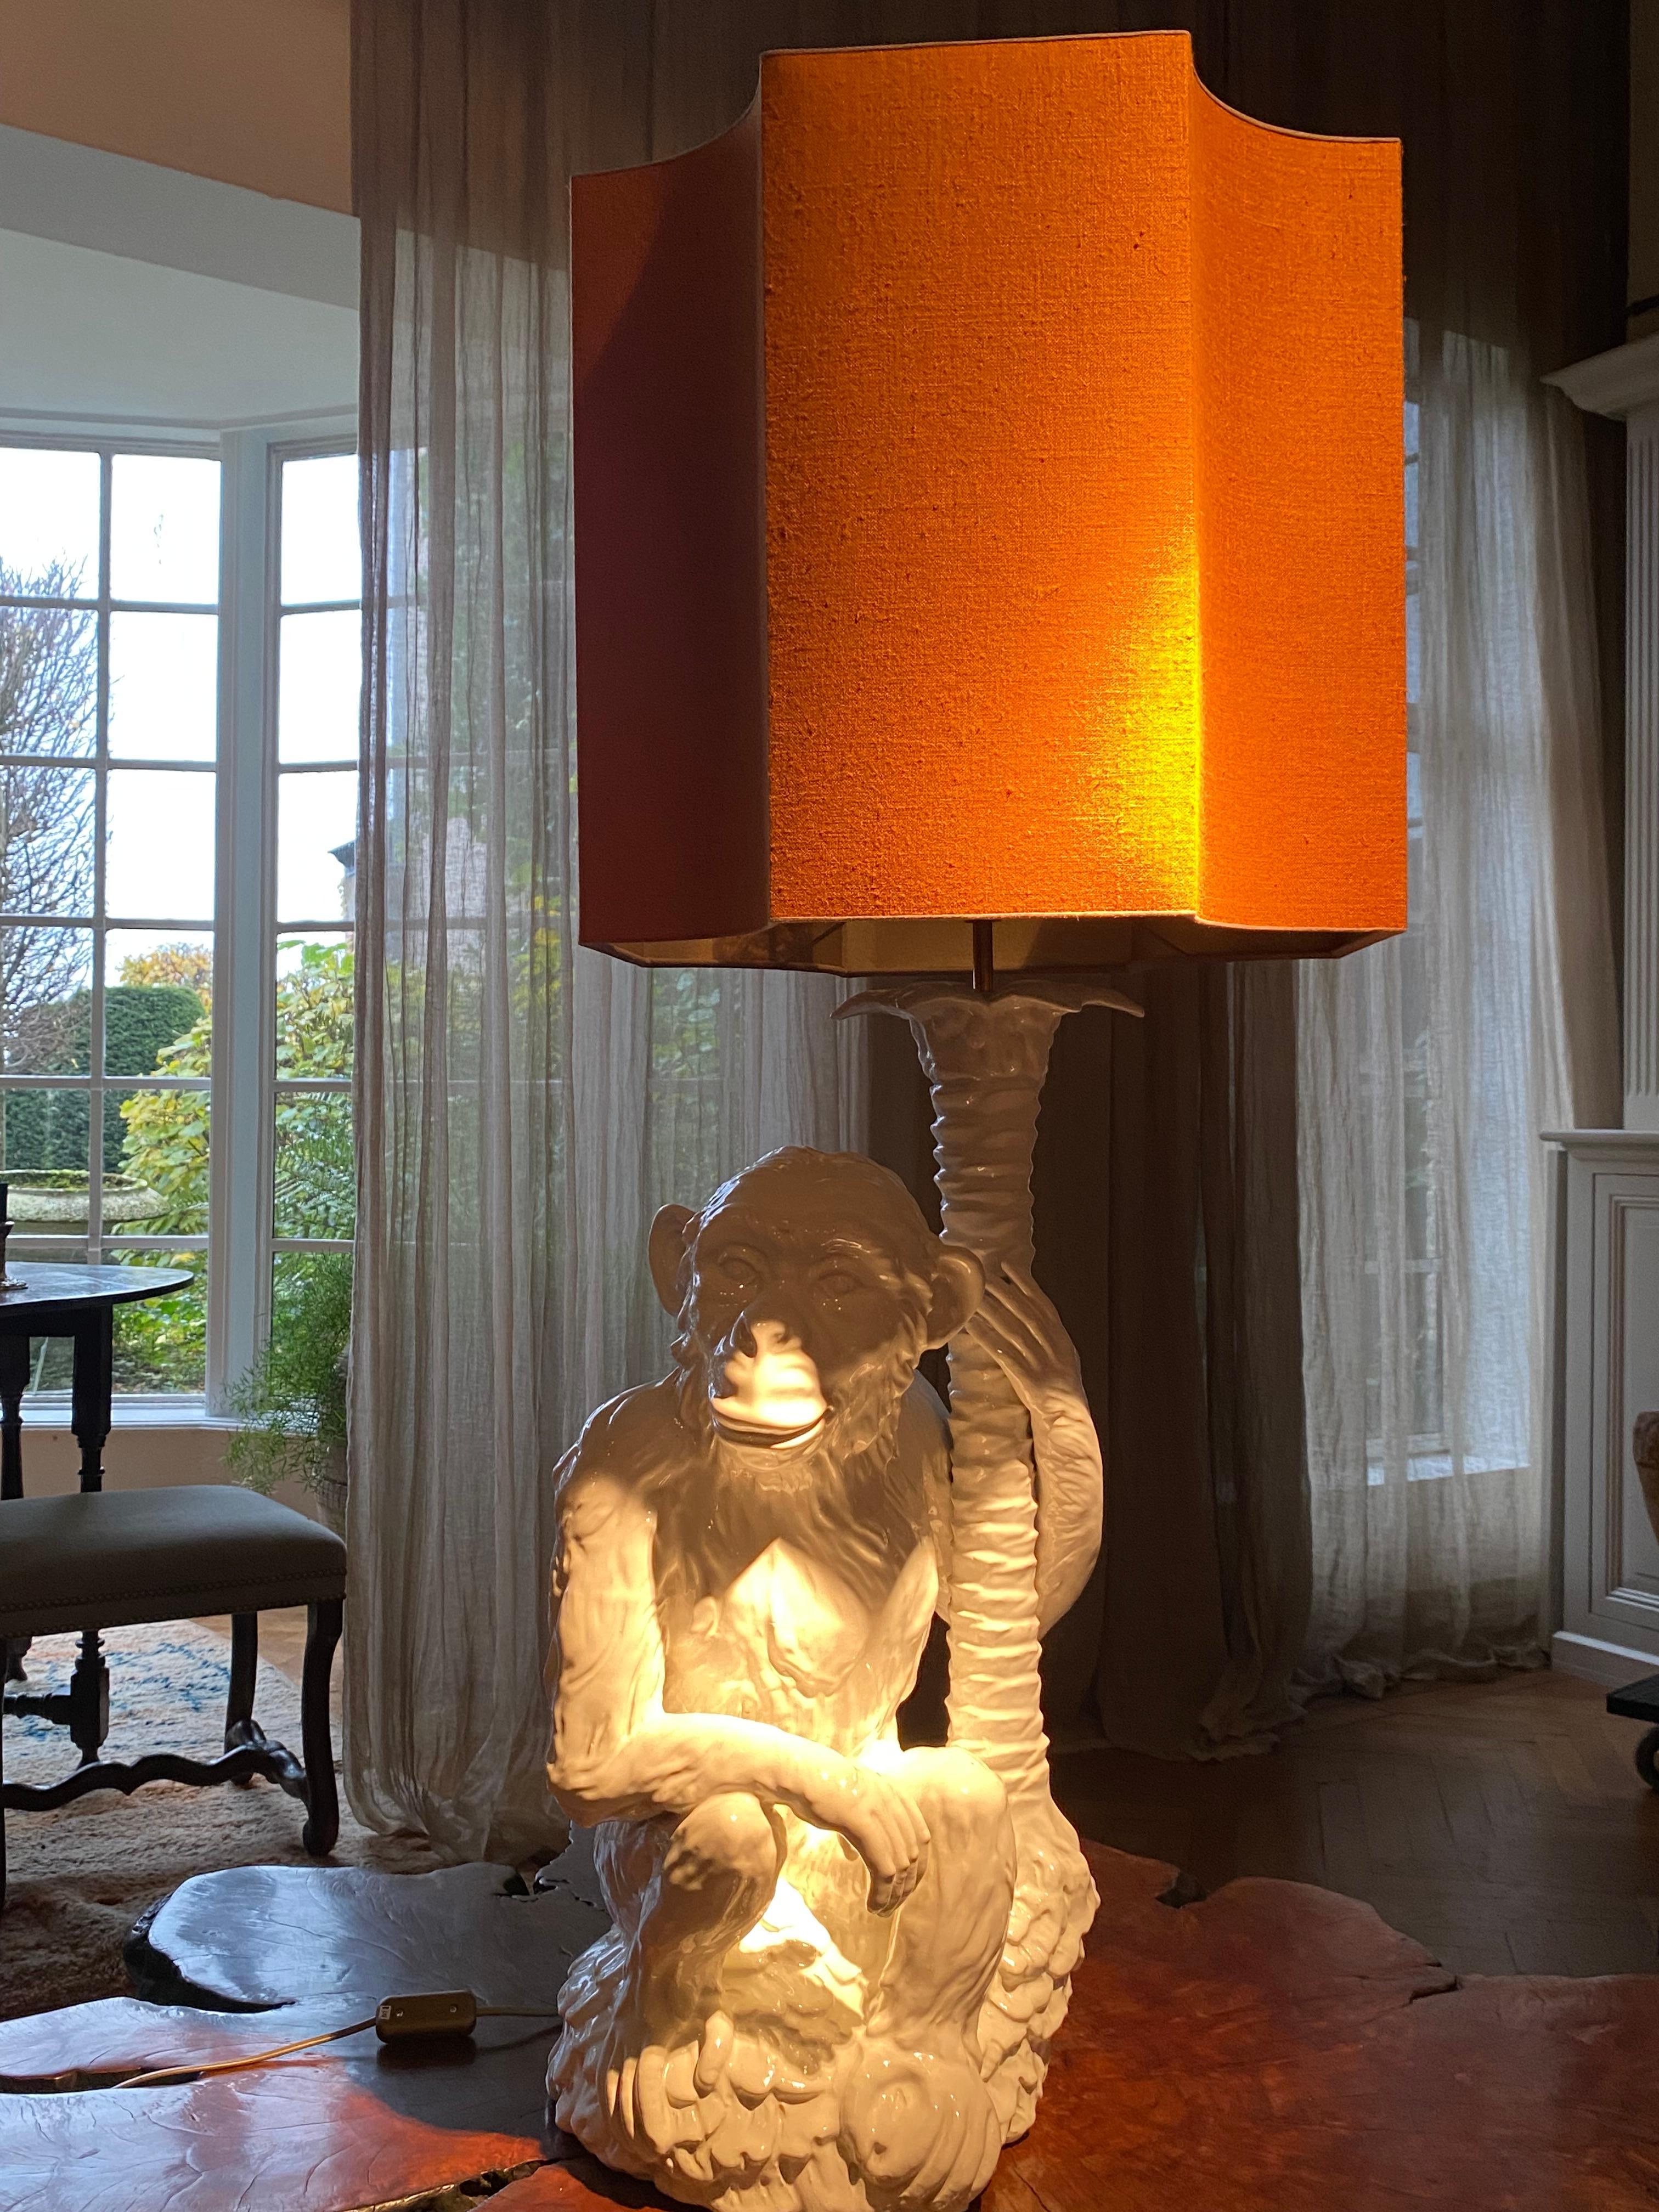 Exceptionnelle lampe de table, singe assis à un arbre,
Porcelaine blanche en parfait état,
objet très décoratif,
nouvel abat-jour réalisé dans un tissu orange,
L'abat-jour mesure 45 cm de haut x 43 cm de large et 43 cm de profondeur.